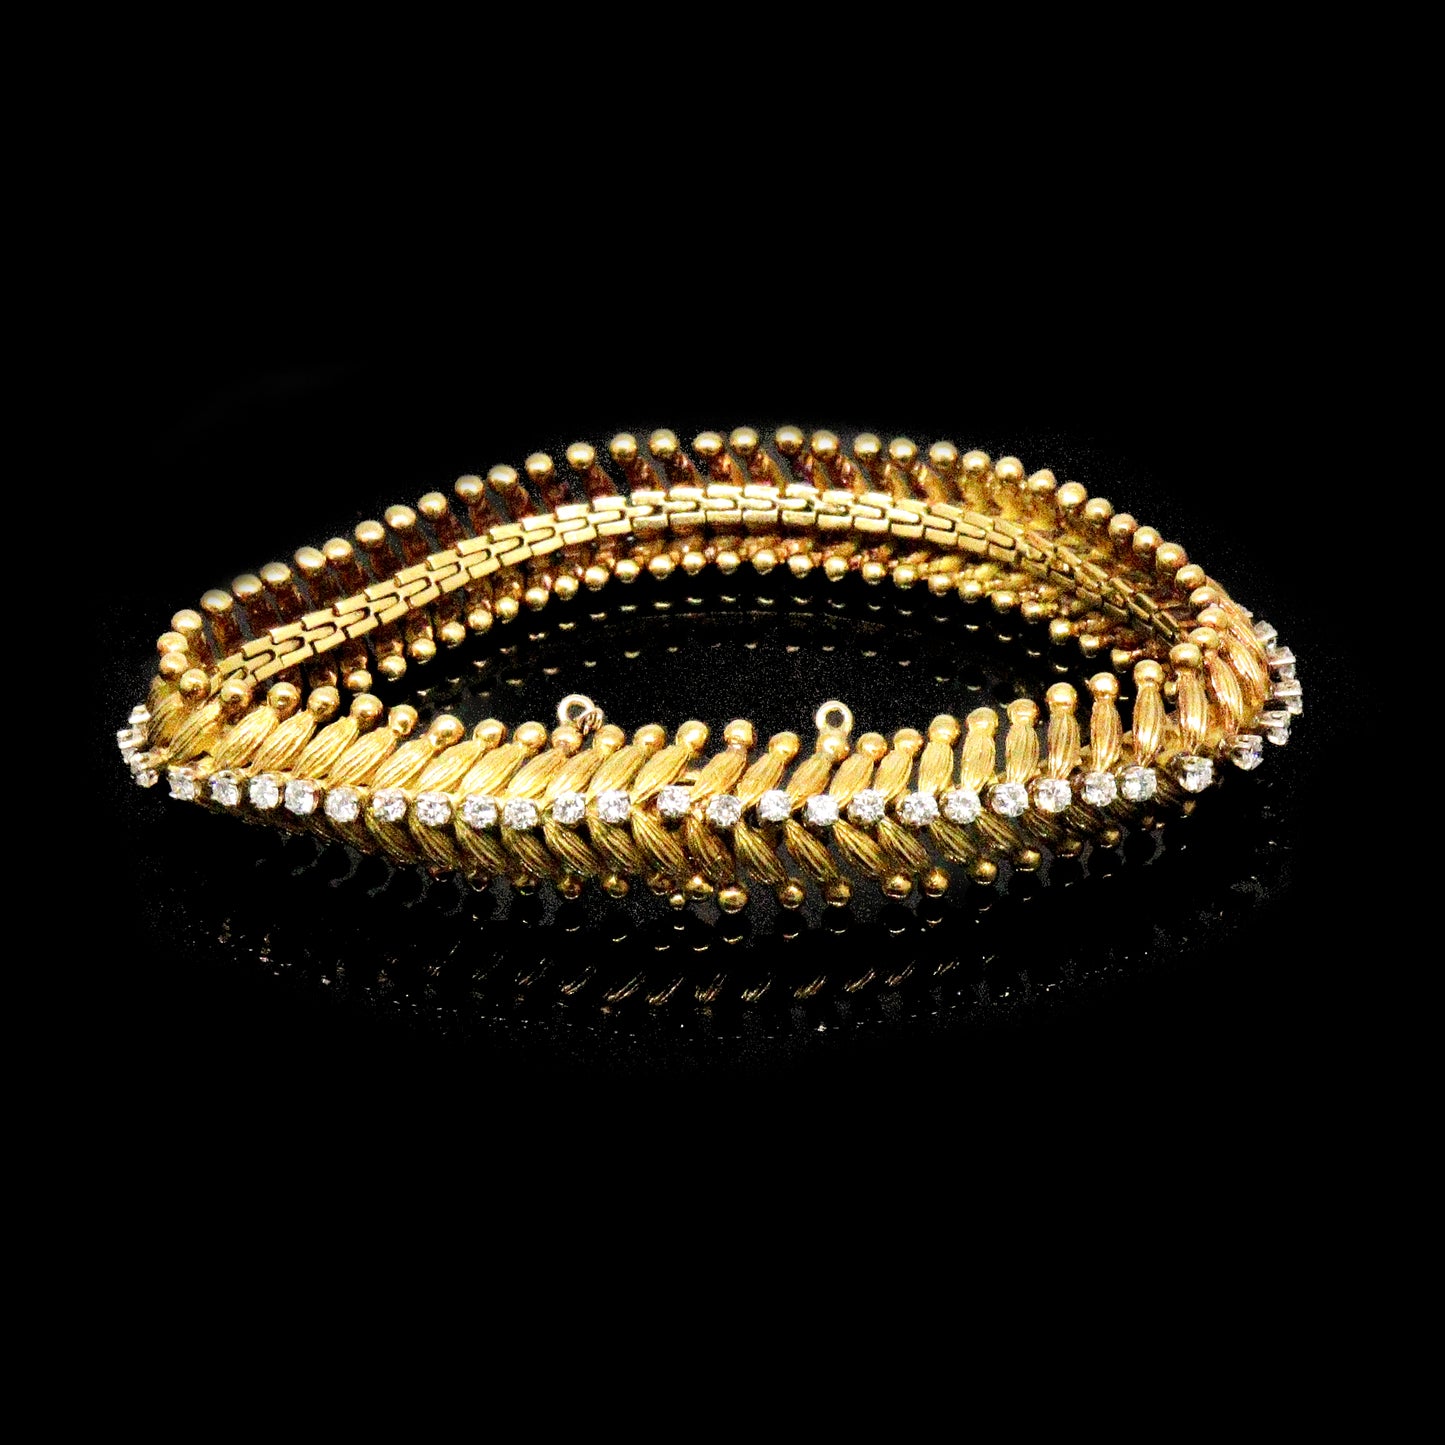 Vintage Gold Diamond Bracelet